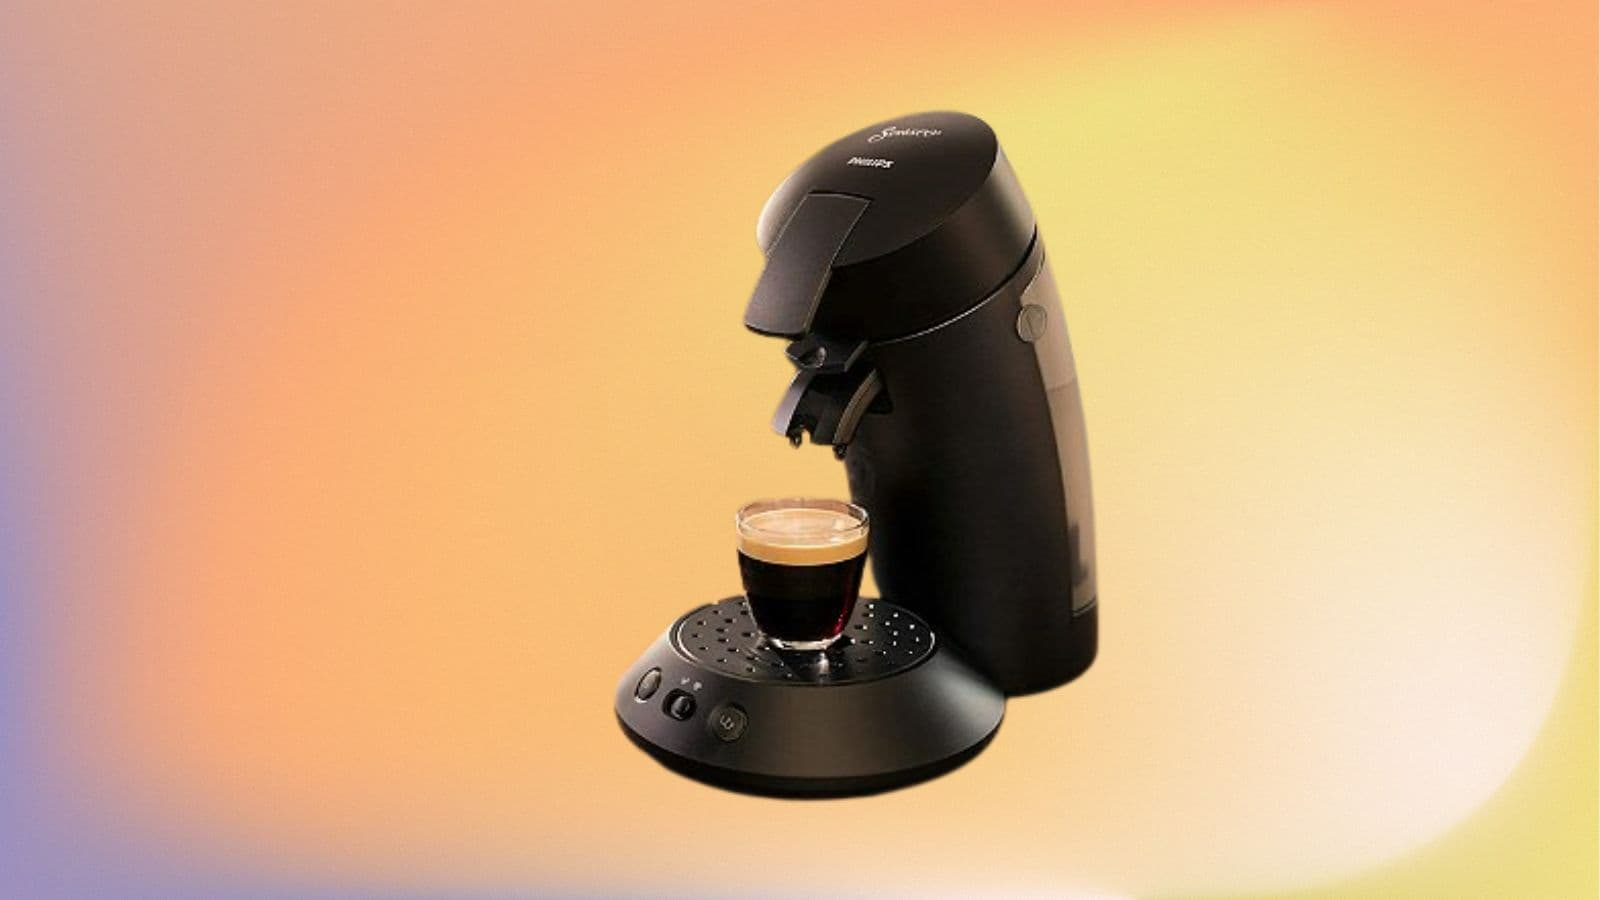 La machine à café dosettes Senseo Original de Philips à prix réduit sur  Cdiscount